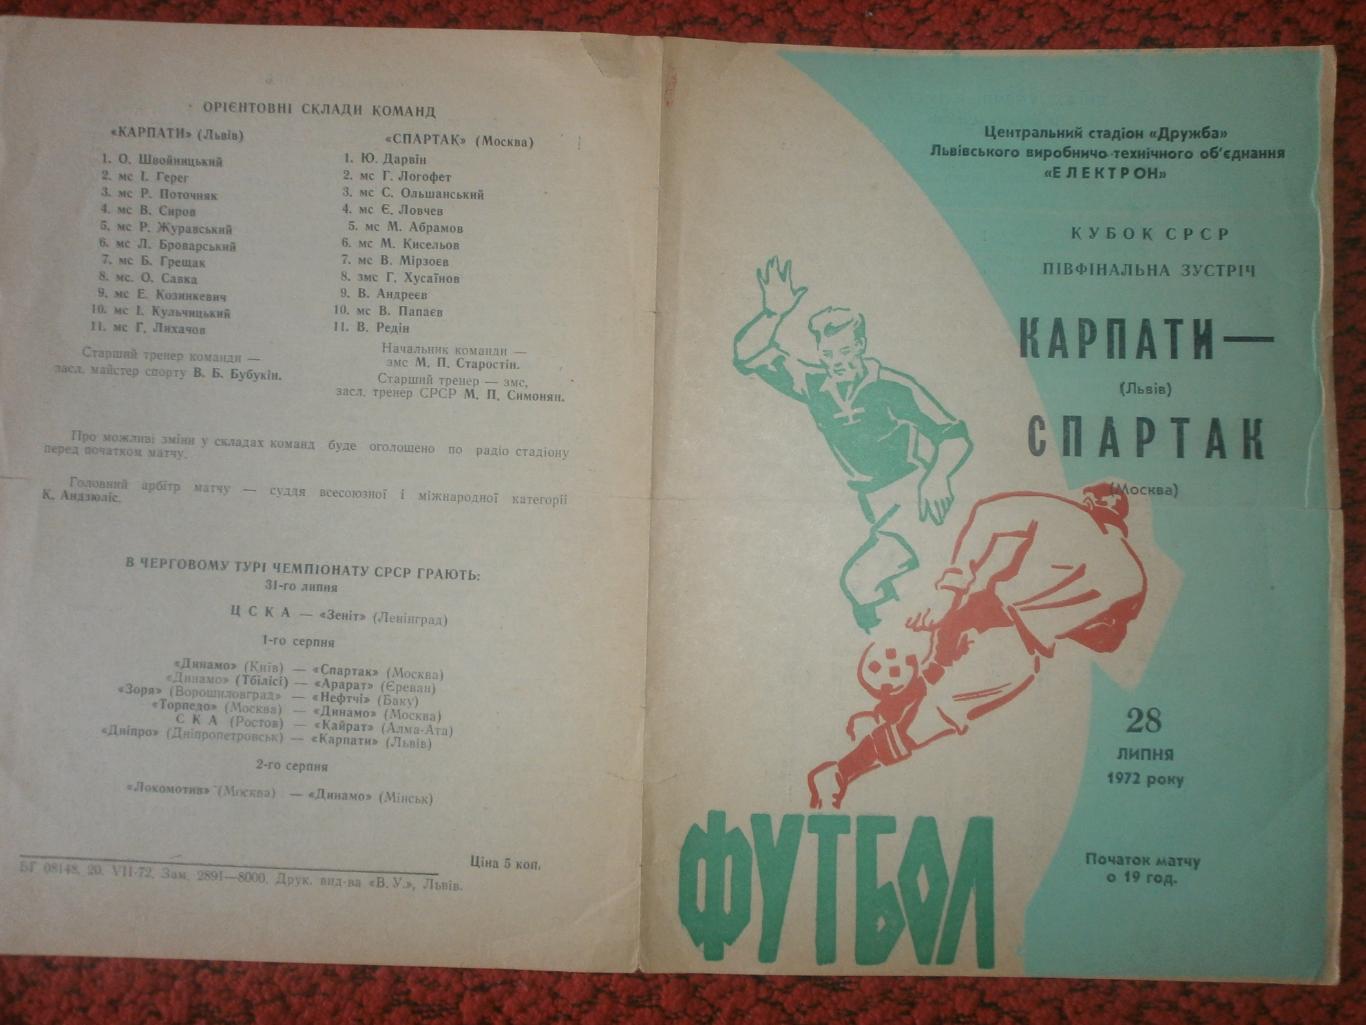 Карпаты Львов - Спартак Москва 1972г.